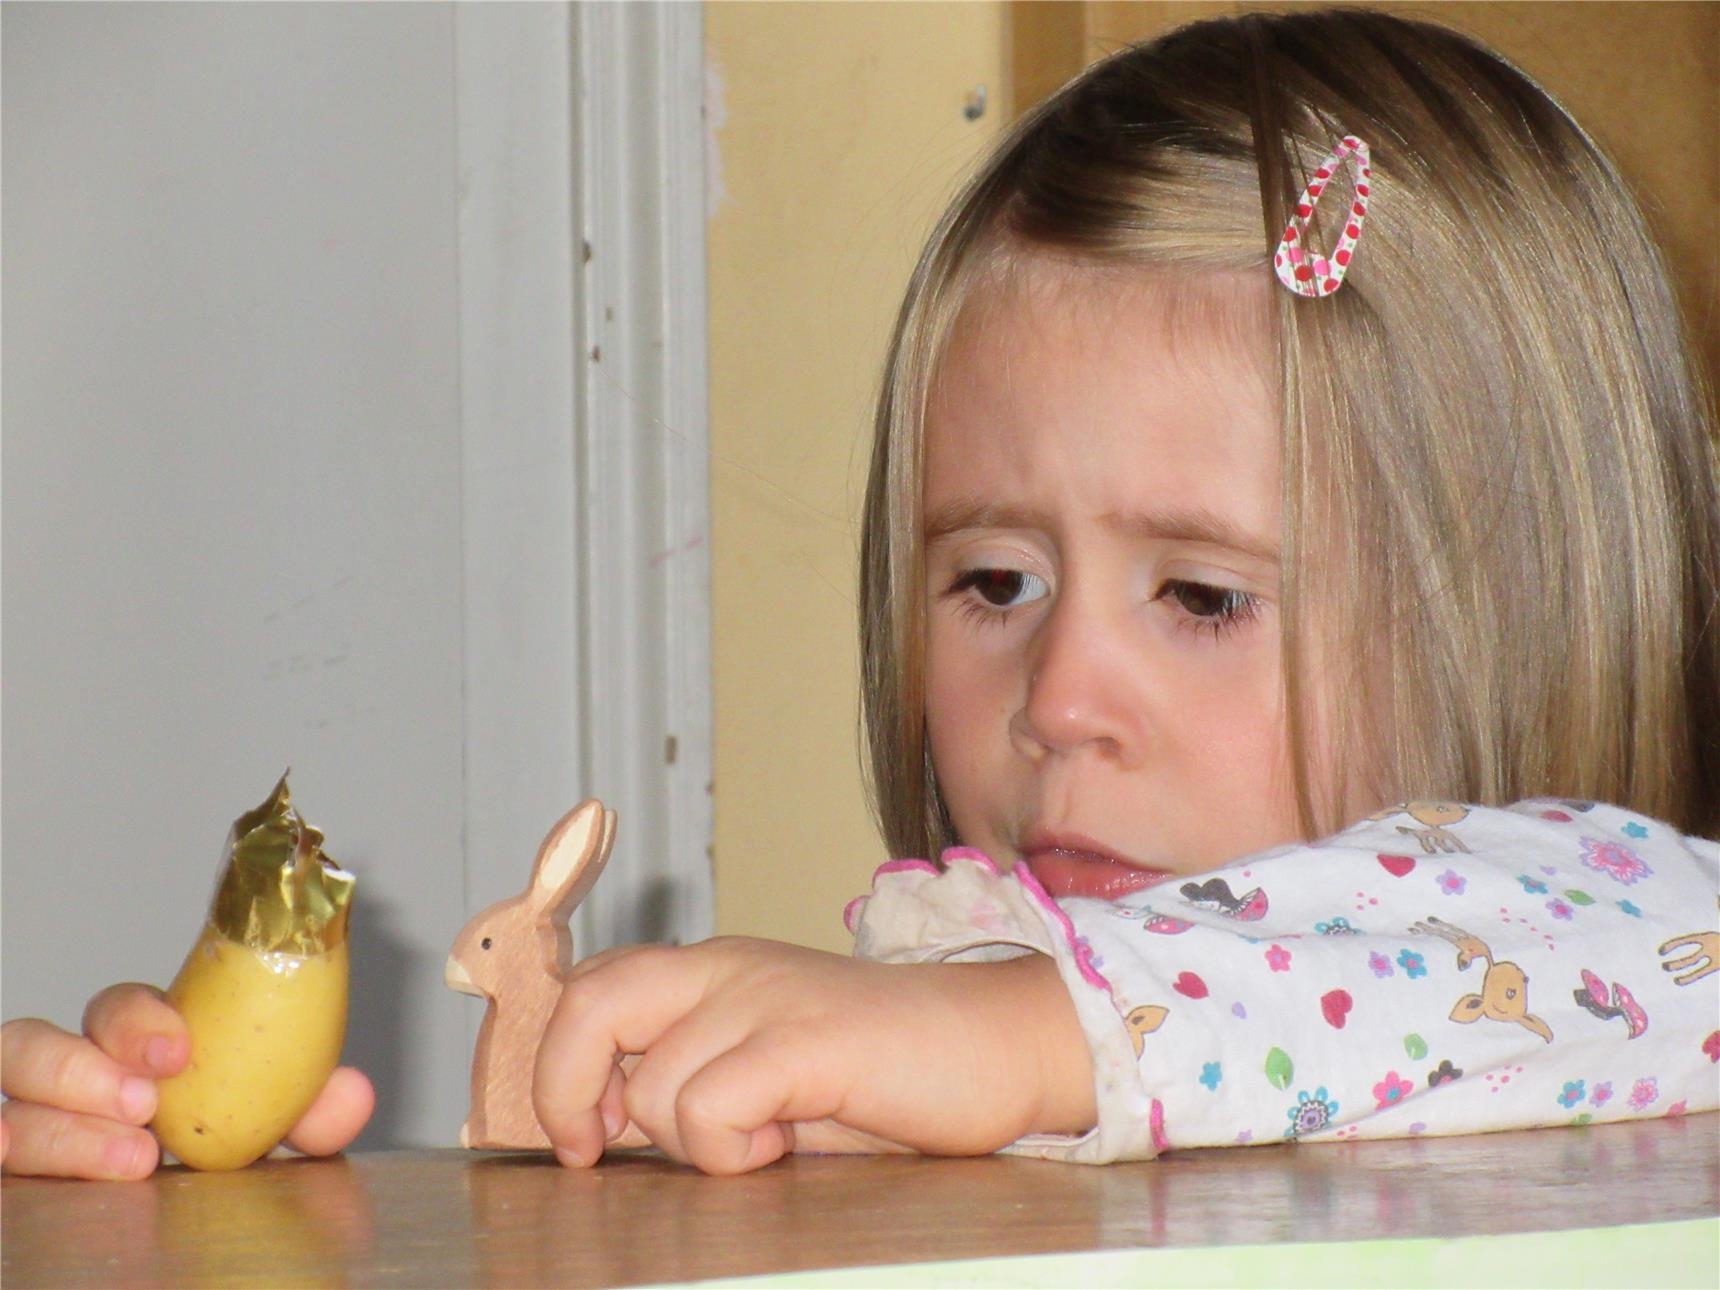 Ein Mädchen spielt auf einem Tisch mit zwei Figuren, einem Häschen und einer Kartoffel mit Papierkrone (Caritasverband Trier e. V.)